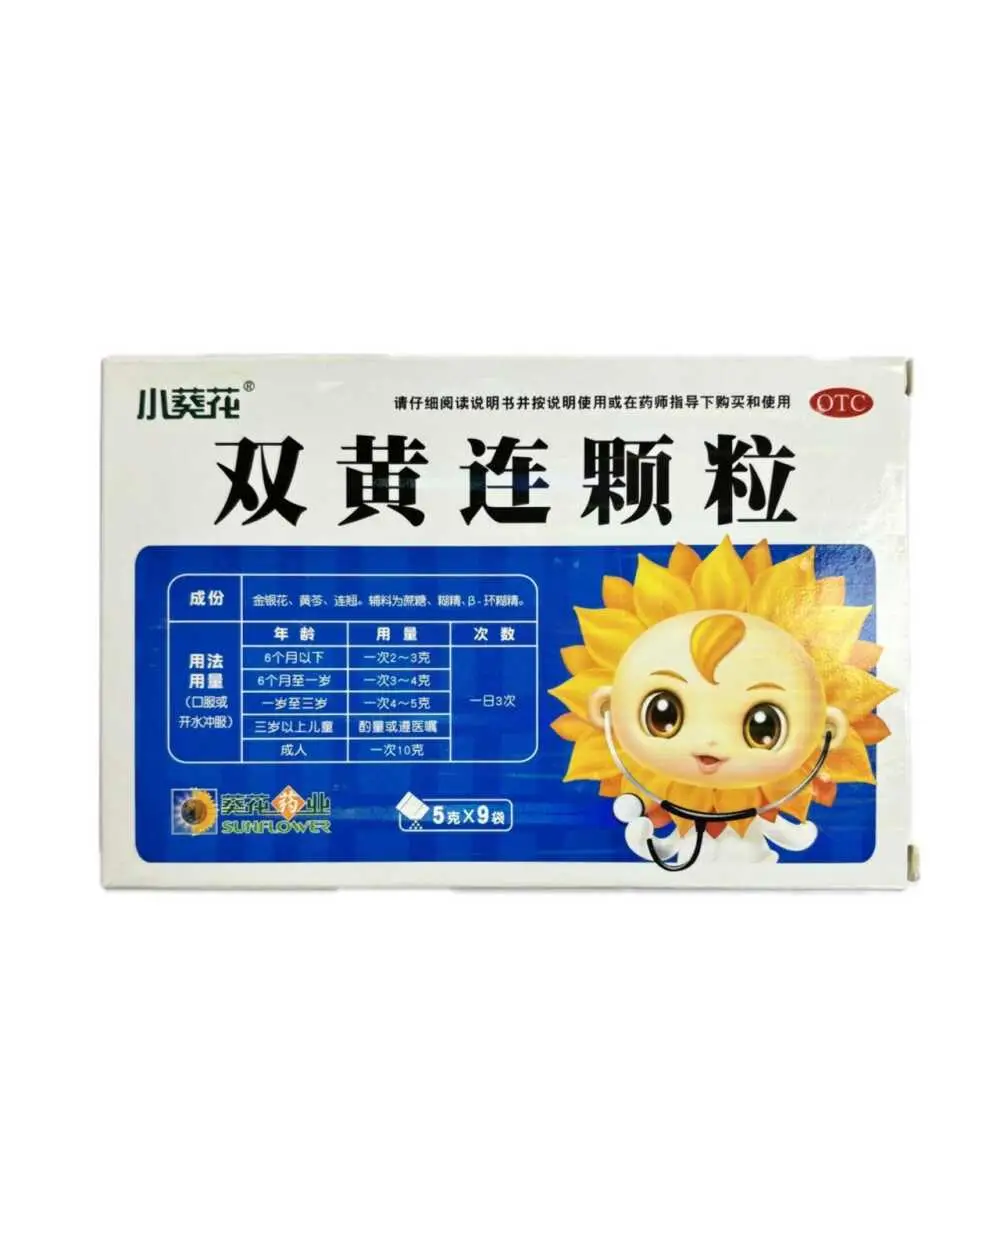 Порошок от гриппа и простуды (природный антибиотик без побочных эффектов) Shuang Huang Lian Keli 9 пакетиков по 5 гр. 